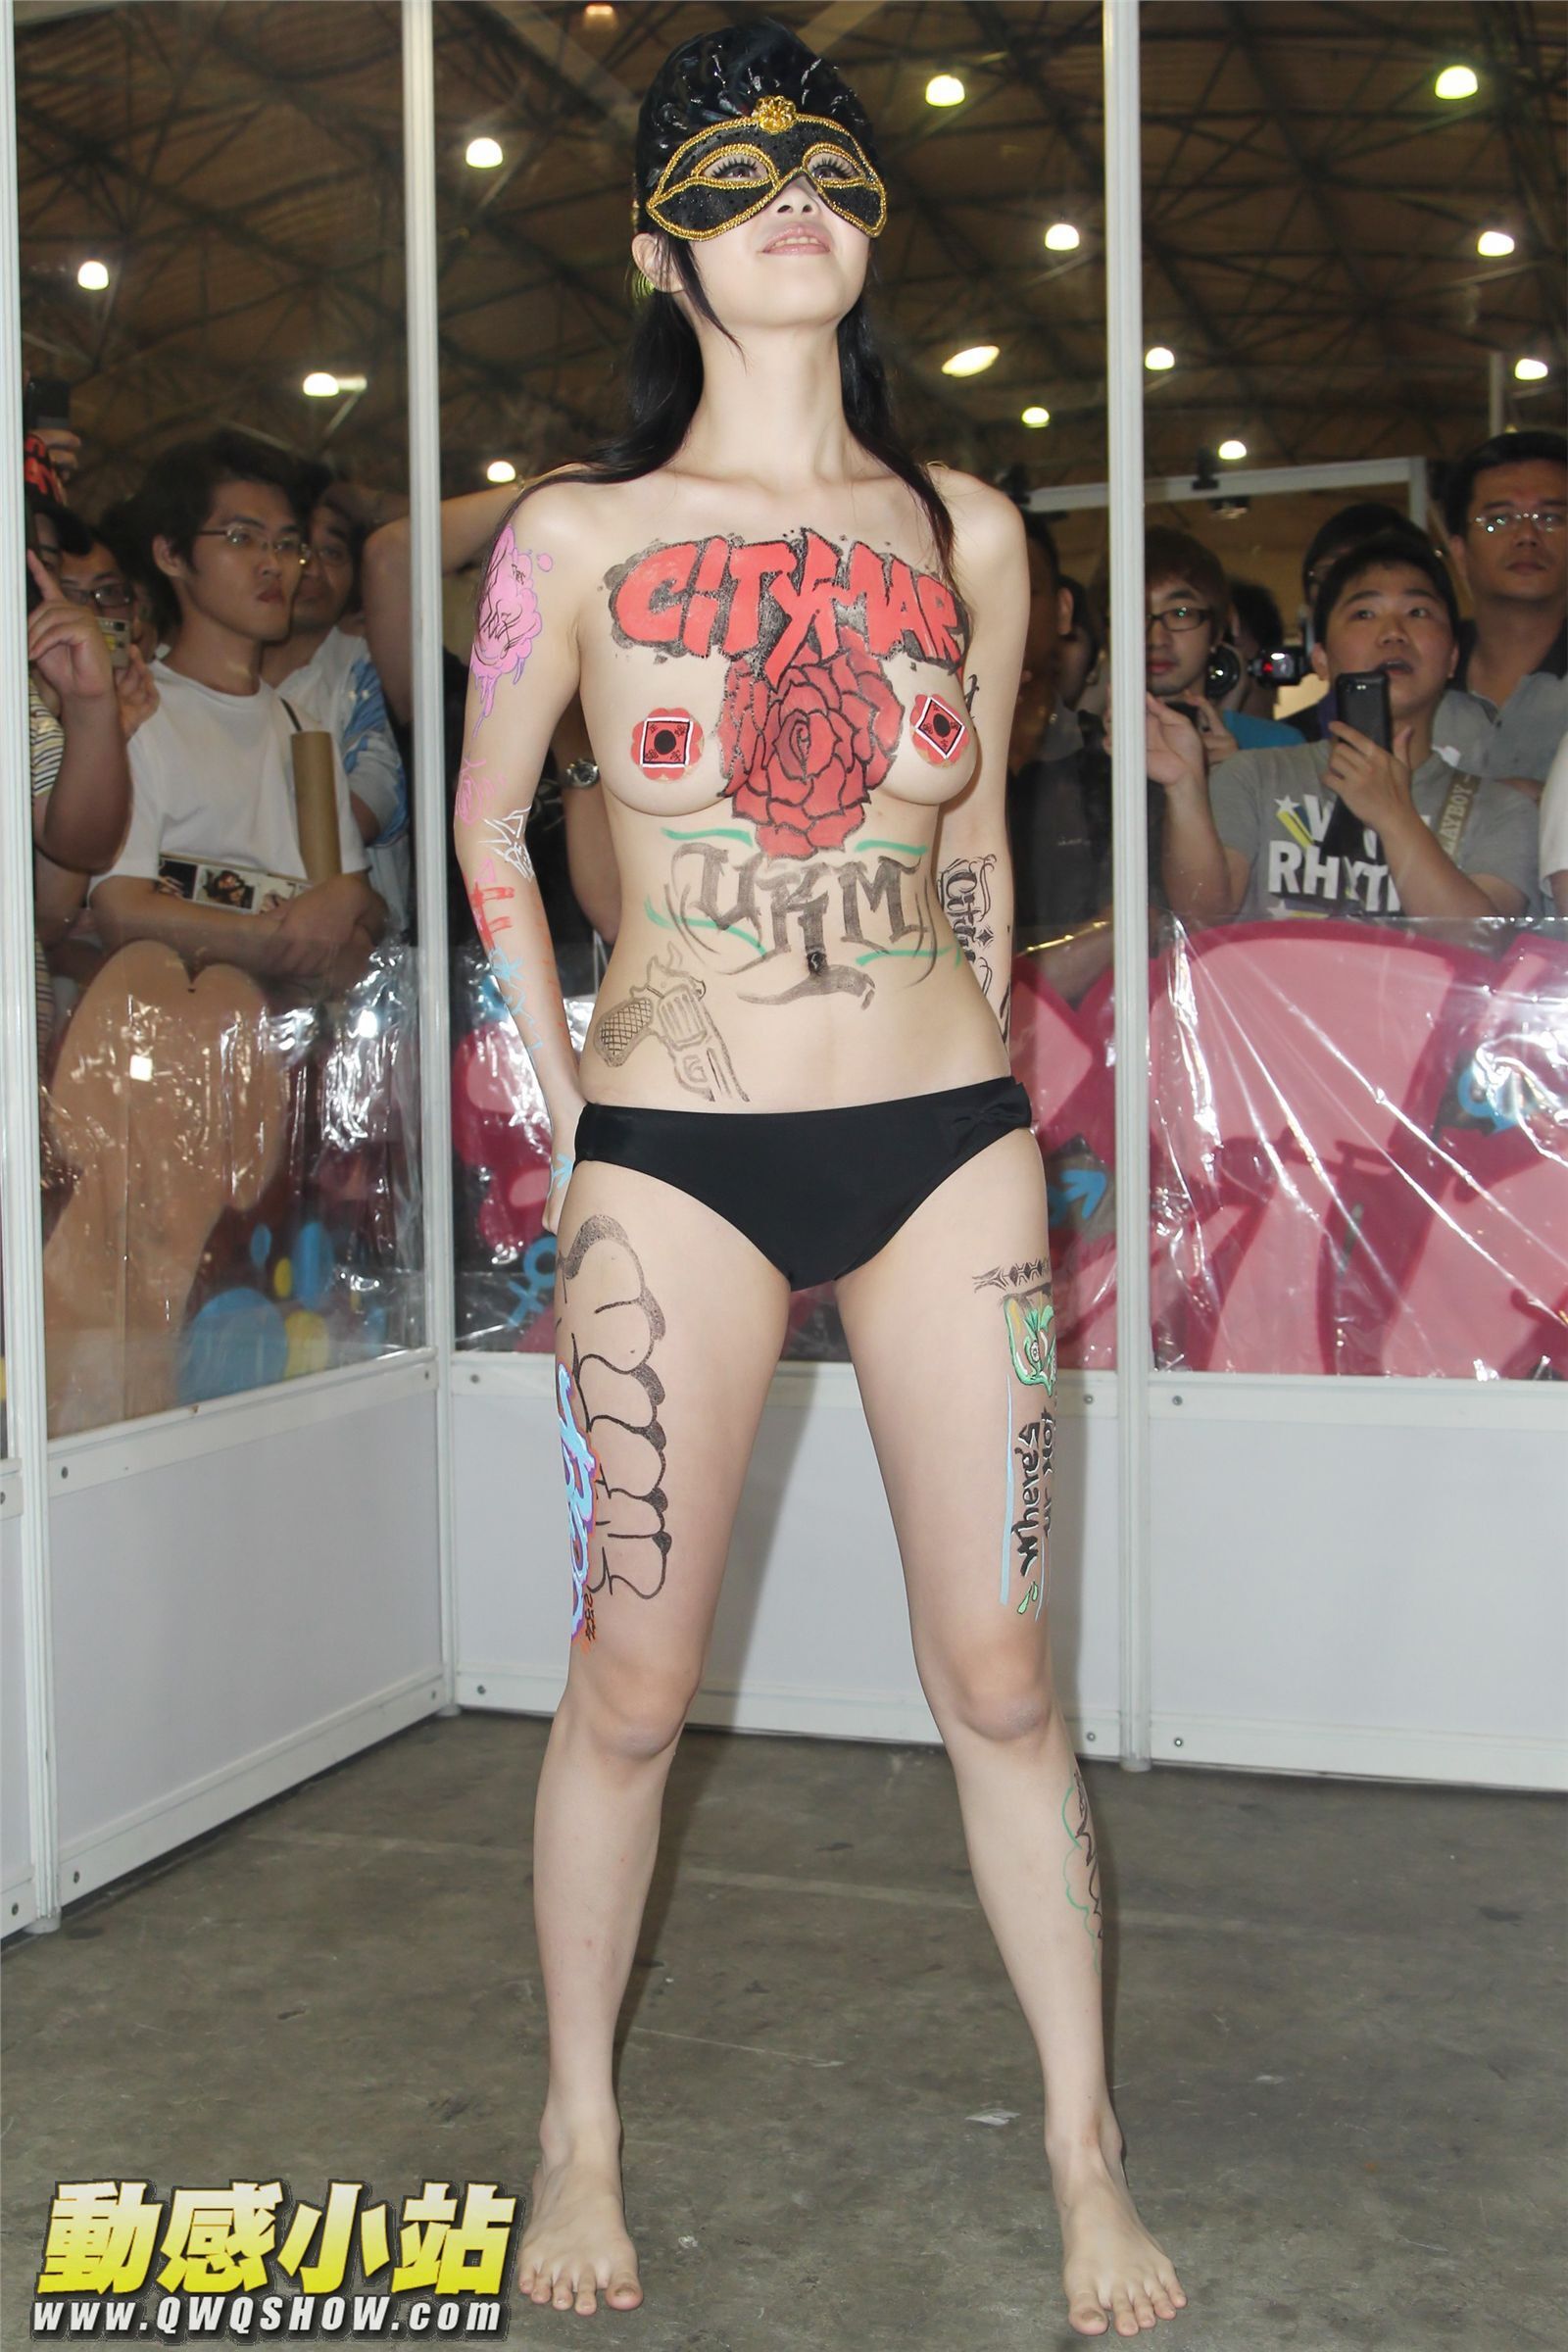 台灣成人博覽會av女優 博覽會彩繪女郎熱舞 动感小站写真美女图片